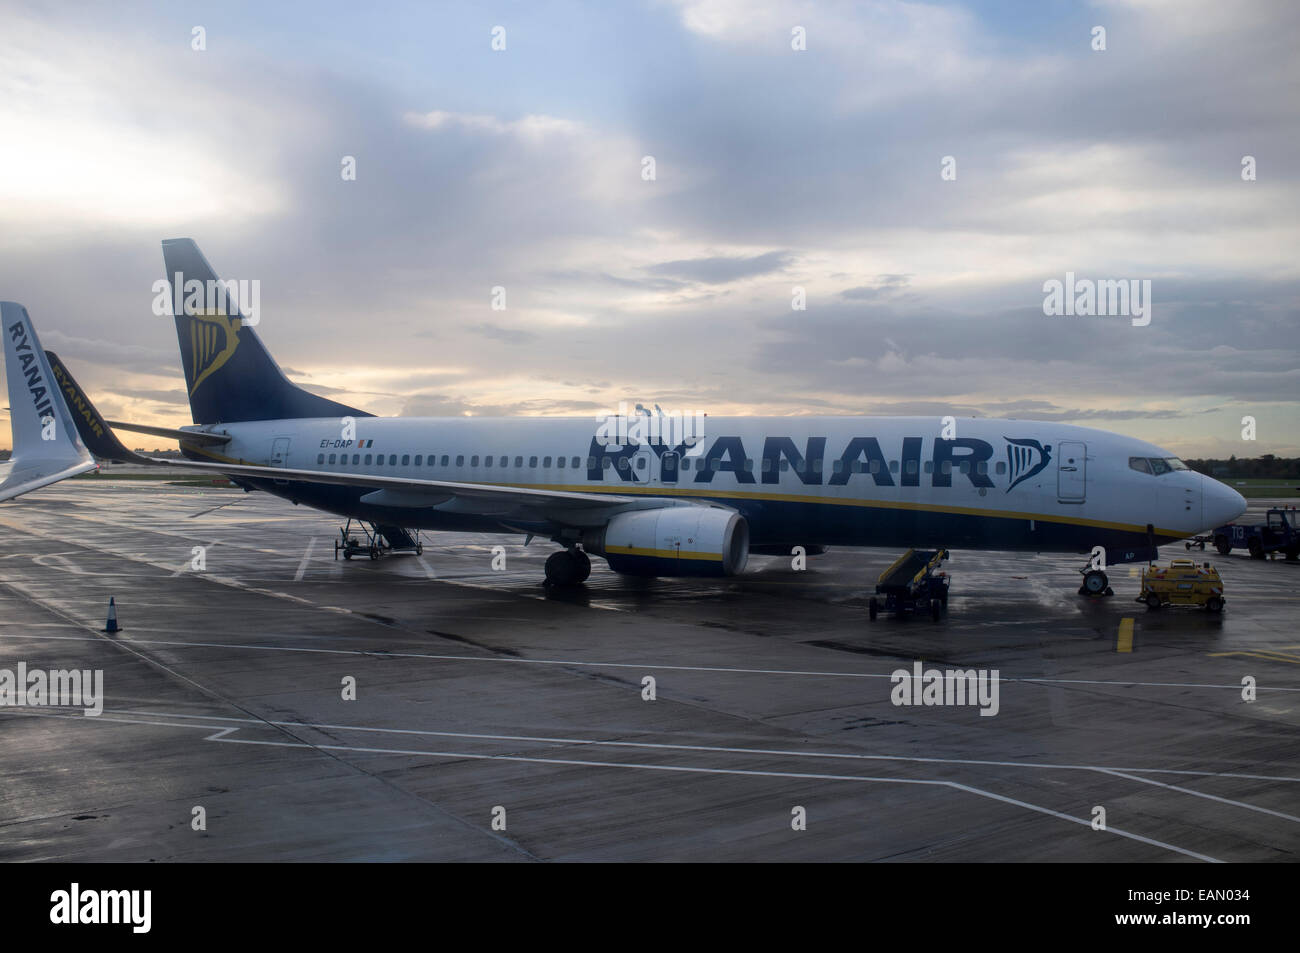 Ryanair airplane Boeing 737-800 at Dublin Airport, Ireland Stock Photo